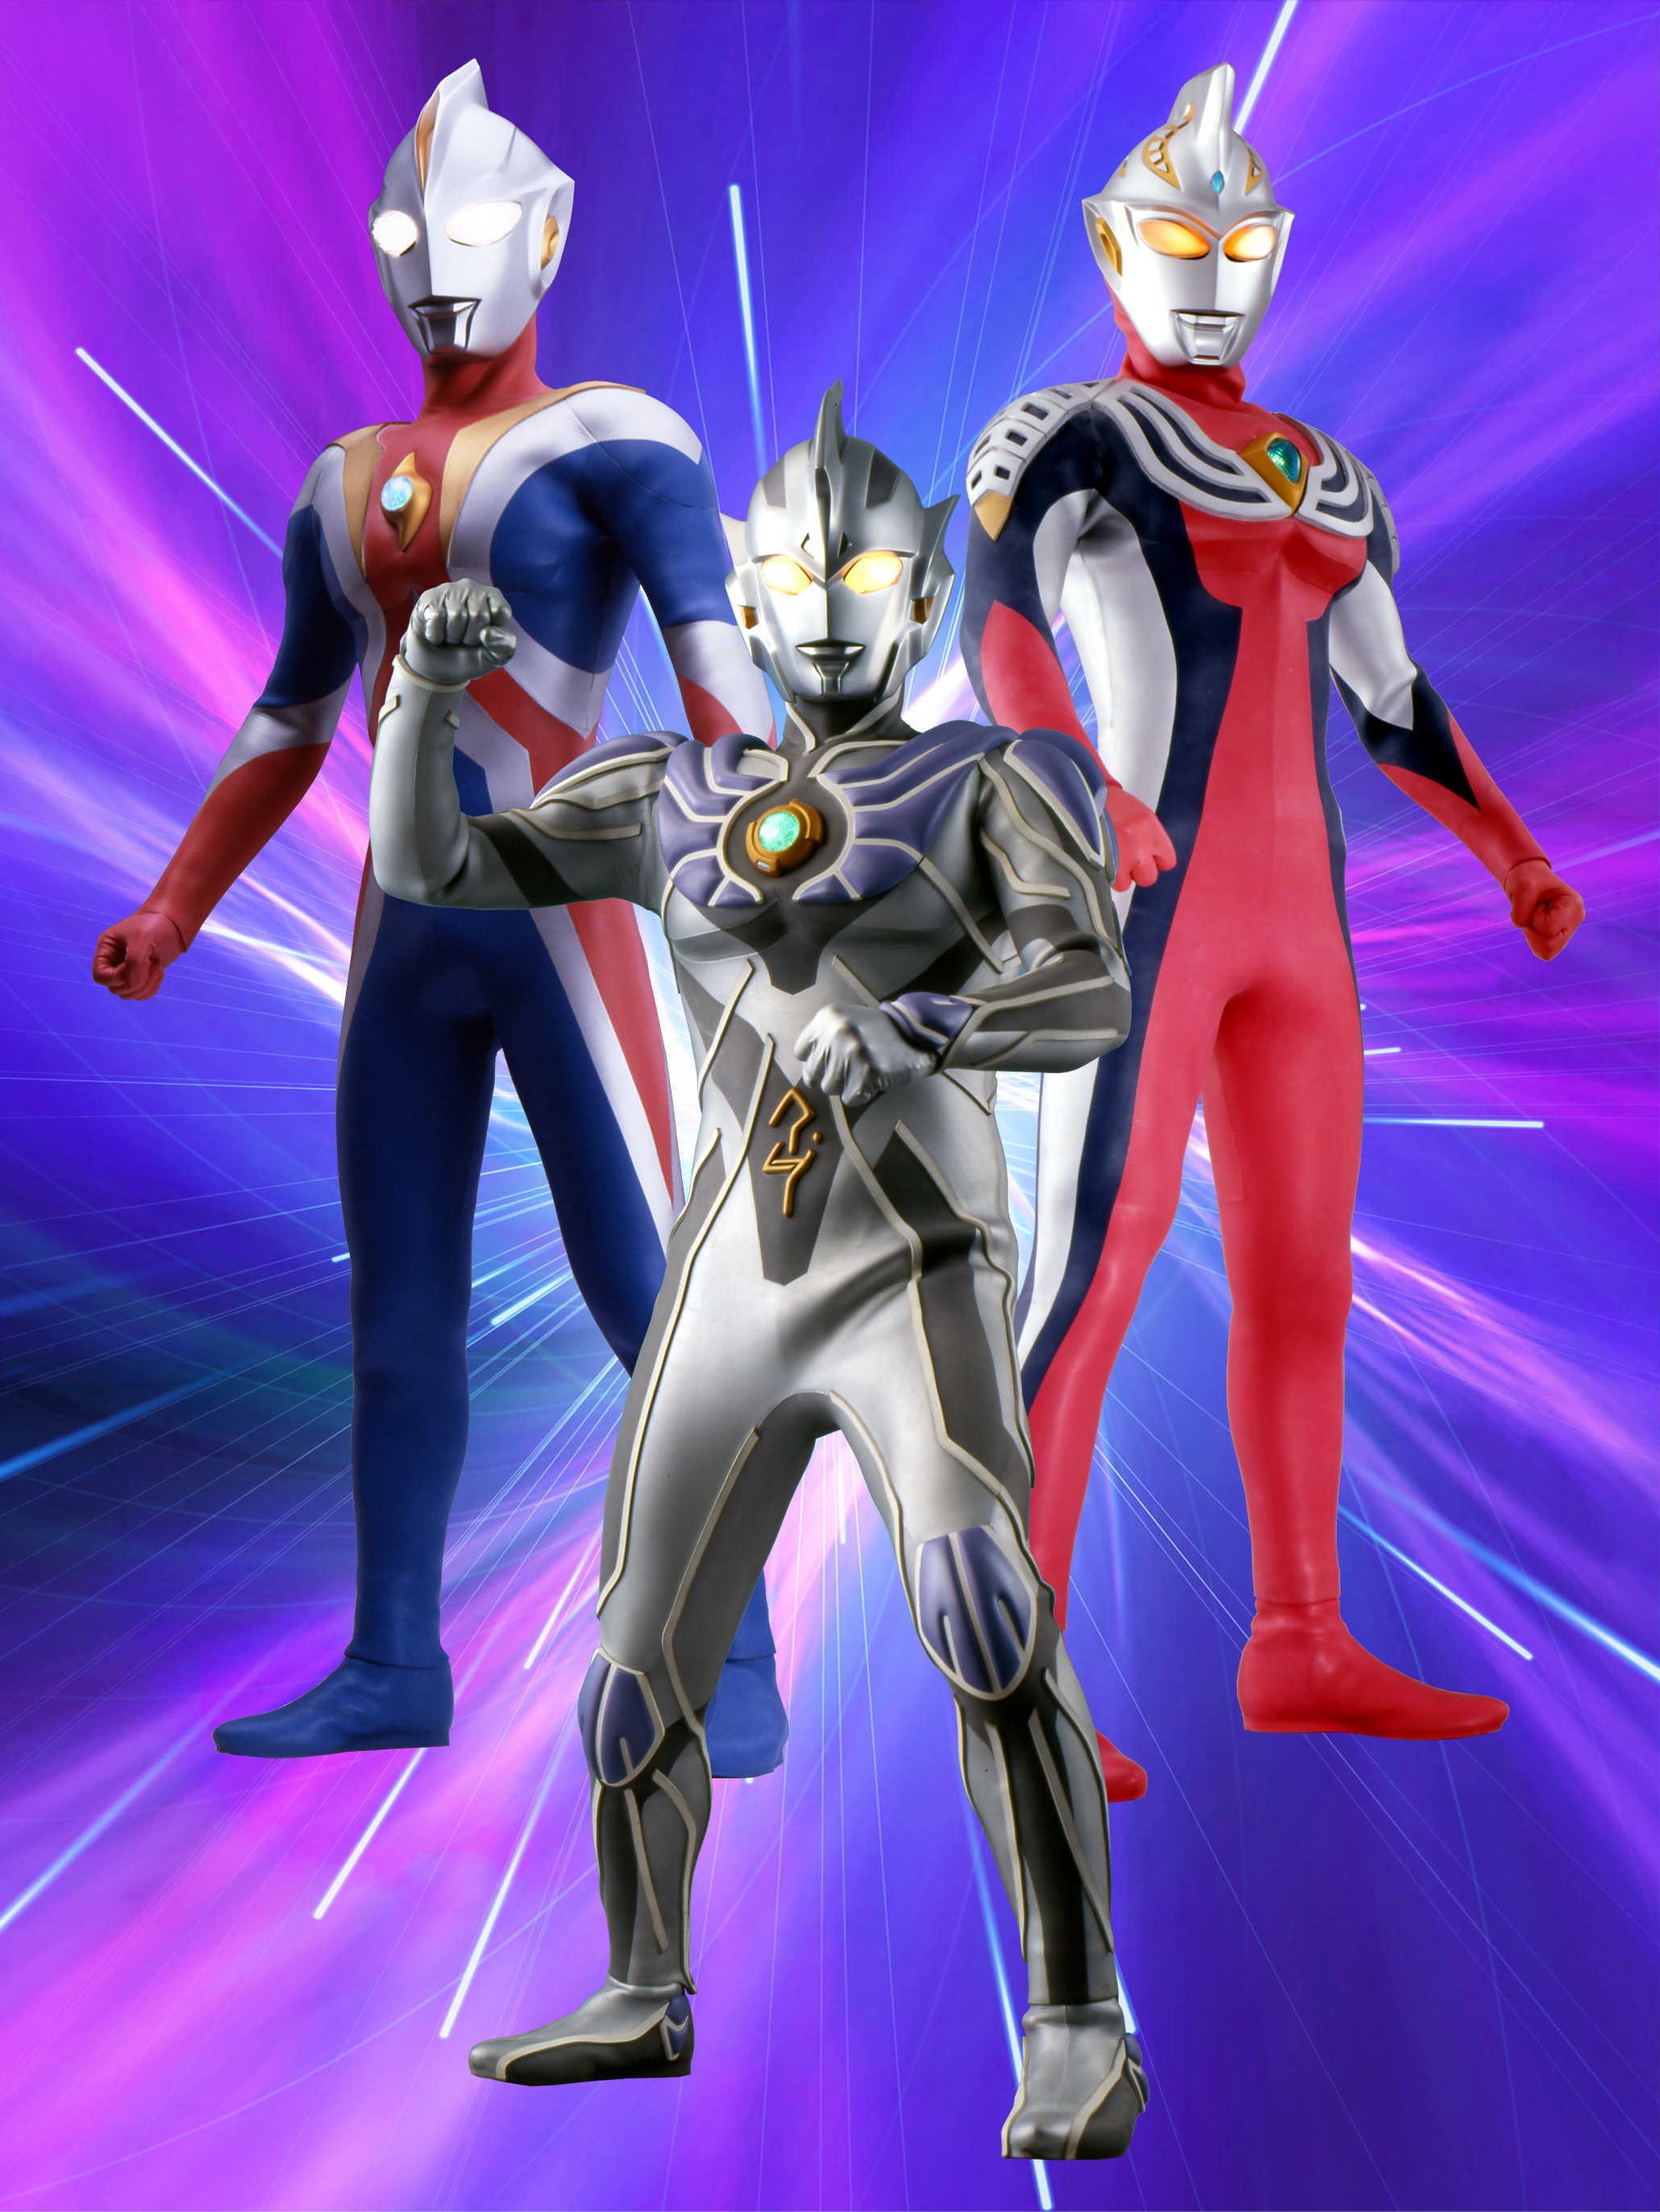 Ultraman Legend (Ultraman Cosmos + Ultraman Justice) [Ultraman Cosmos Vs Ultraman Justice: The Final Battle] Minecraft Skin